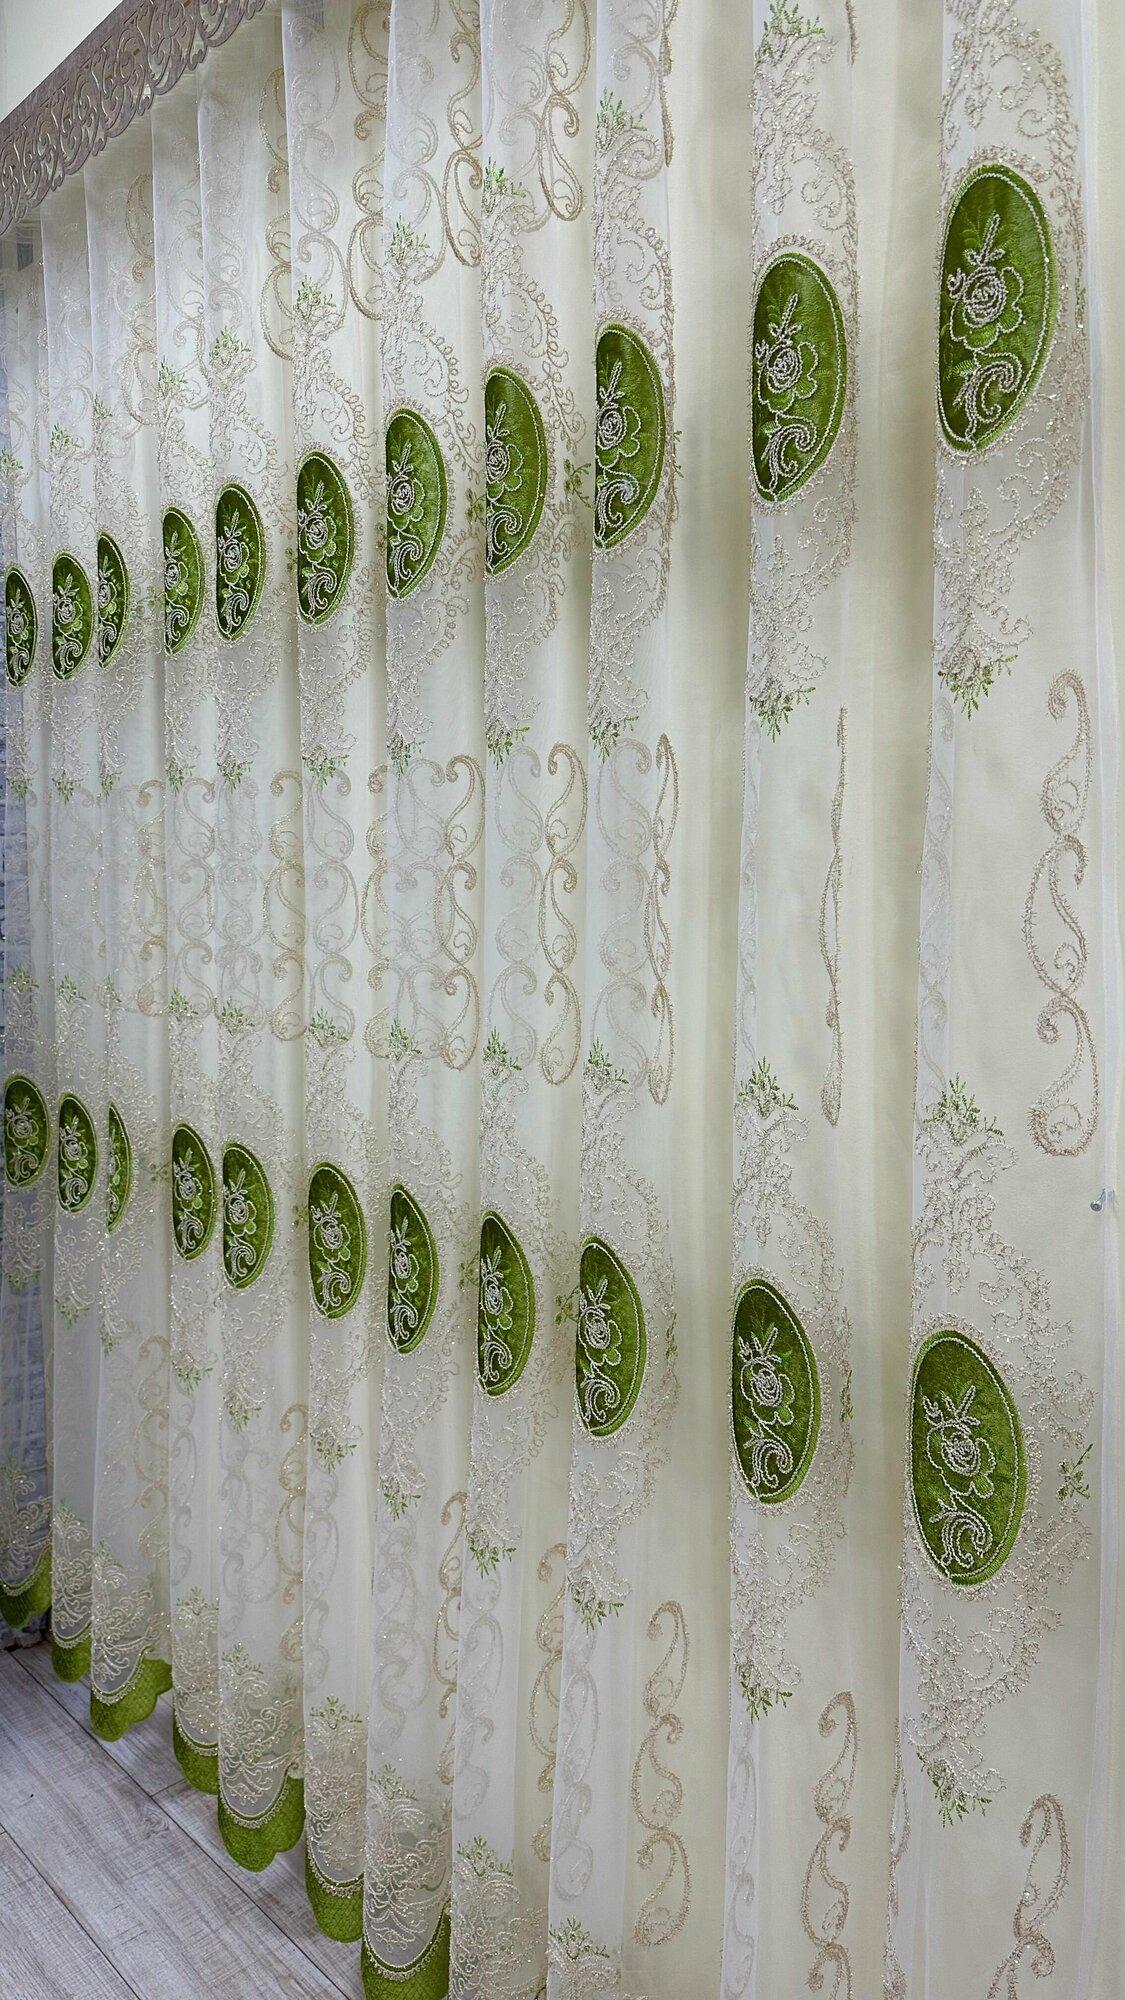 Сеточка с кордовой вышивкой и бархатными вставками зеленая, ширина 4м, высота 2,7м